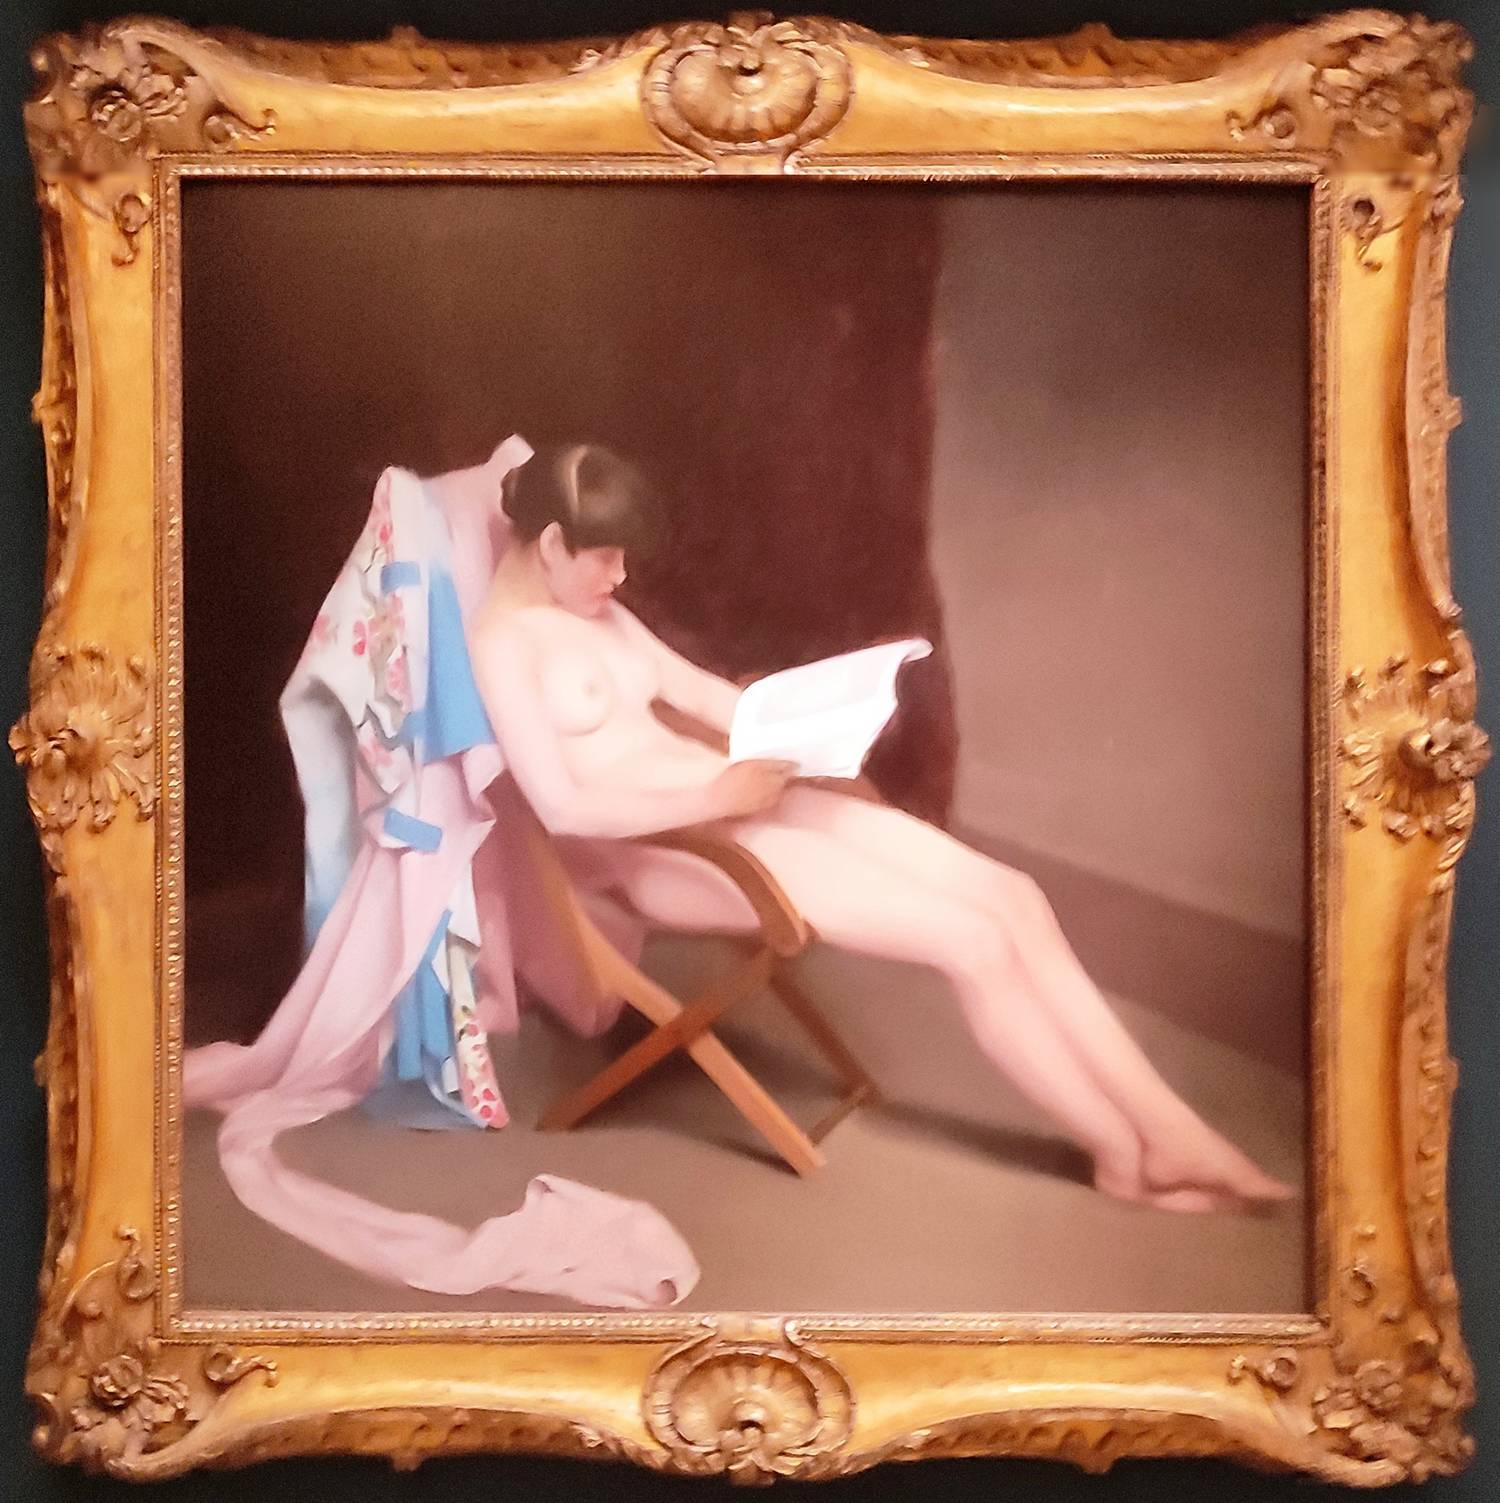 Das lesende Mädchen (Theodor Roussel 1847-1927)